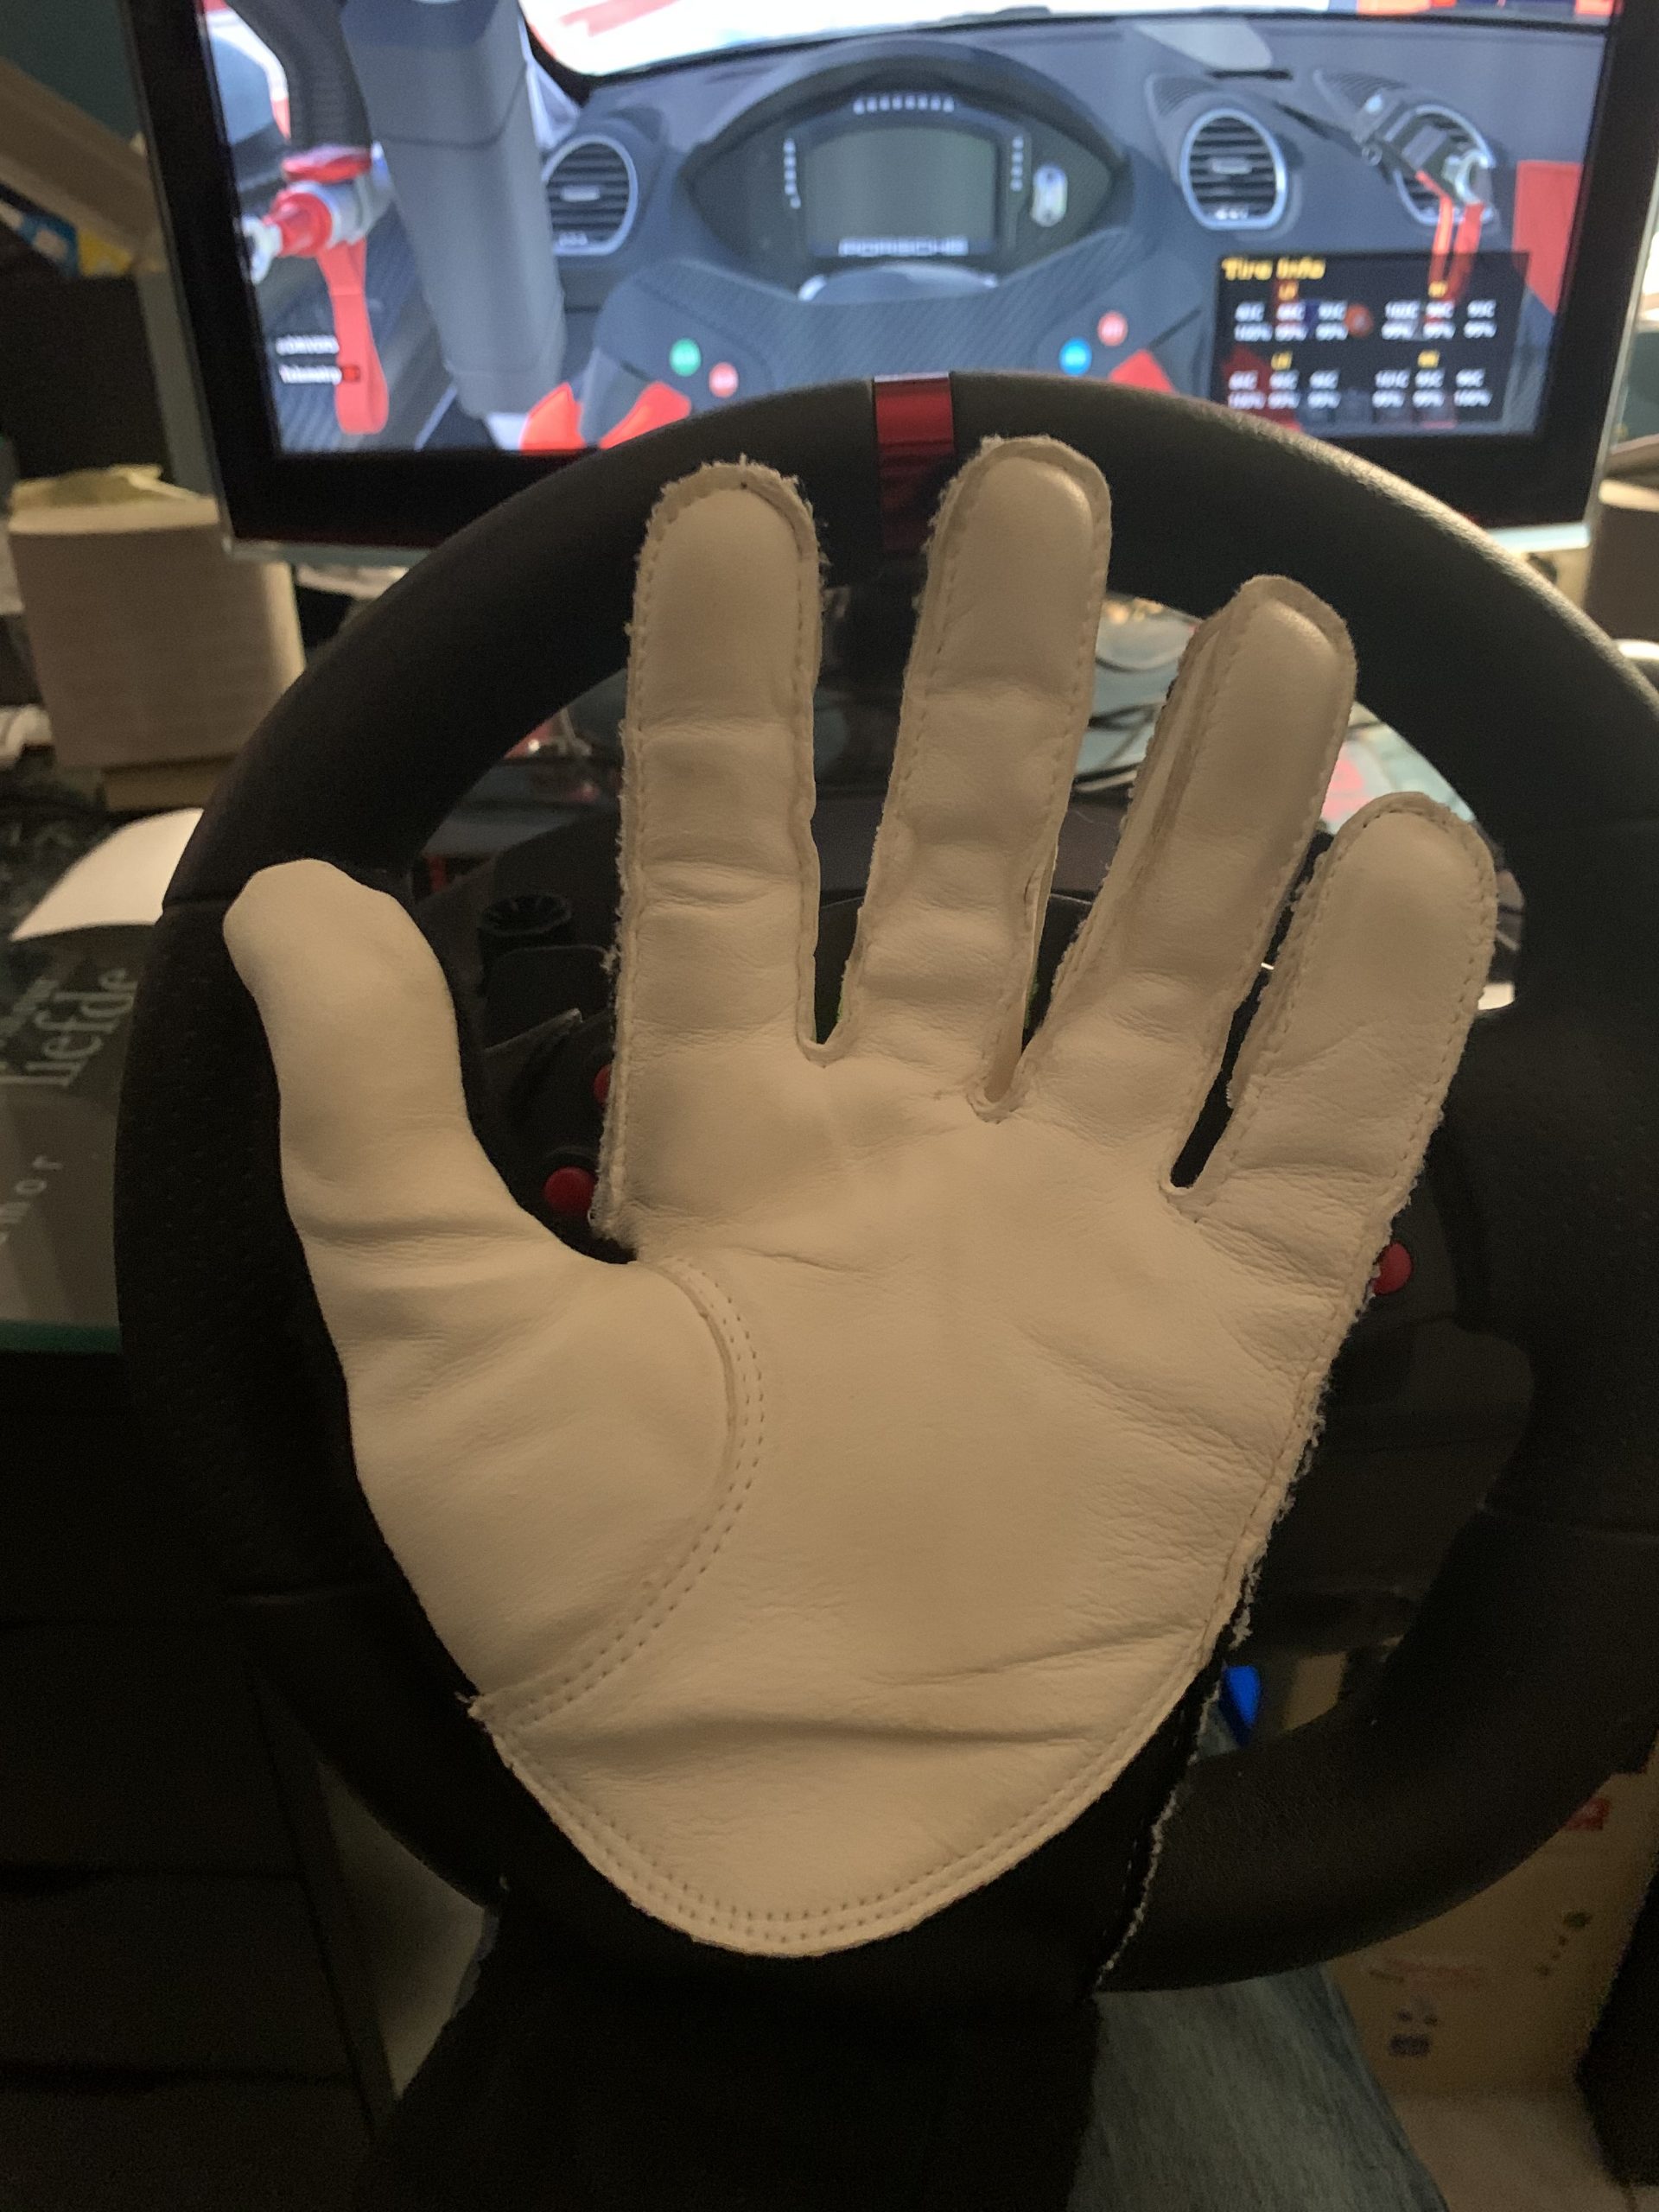 Bottines et gants SimRacing chez Stand21  Objectif-Racing - SimRacing sur  PC, PlayStation et Xbox One - Actualités et essais